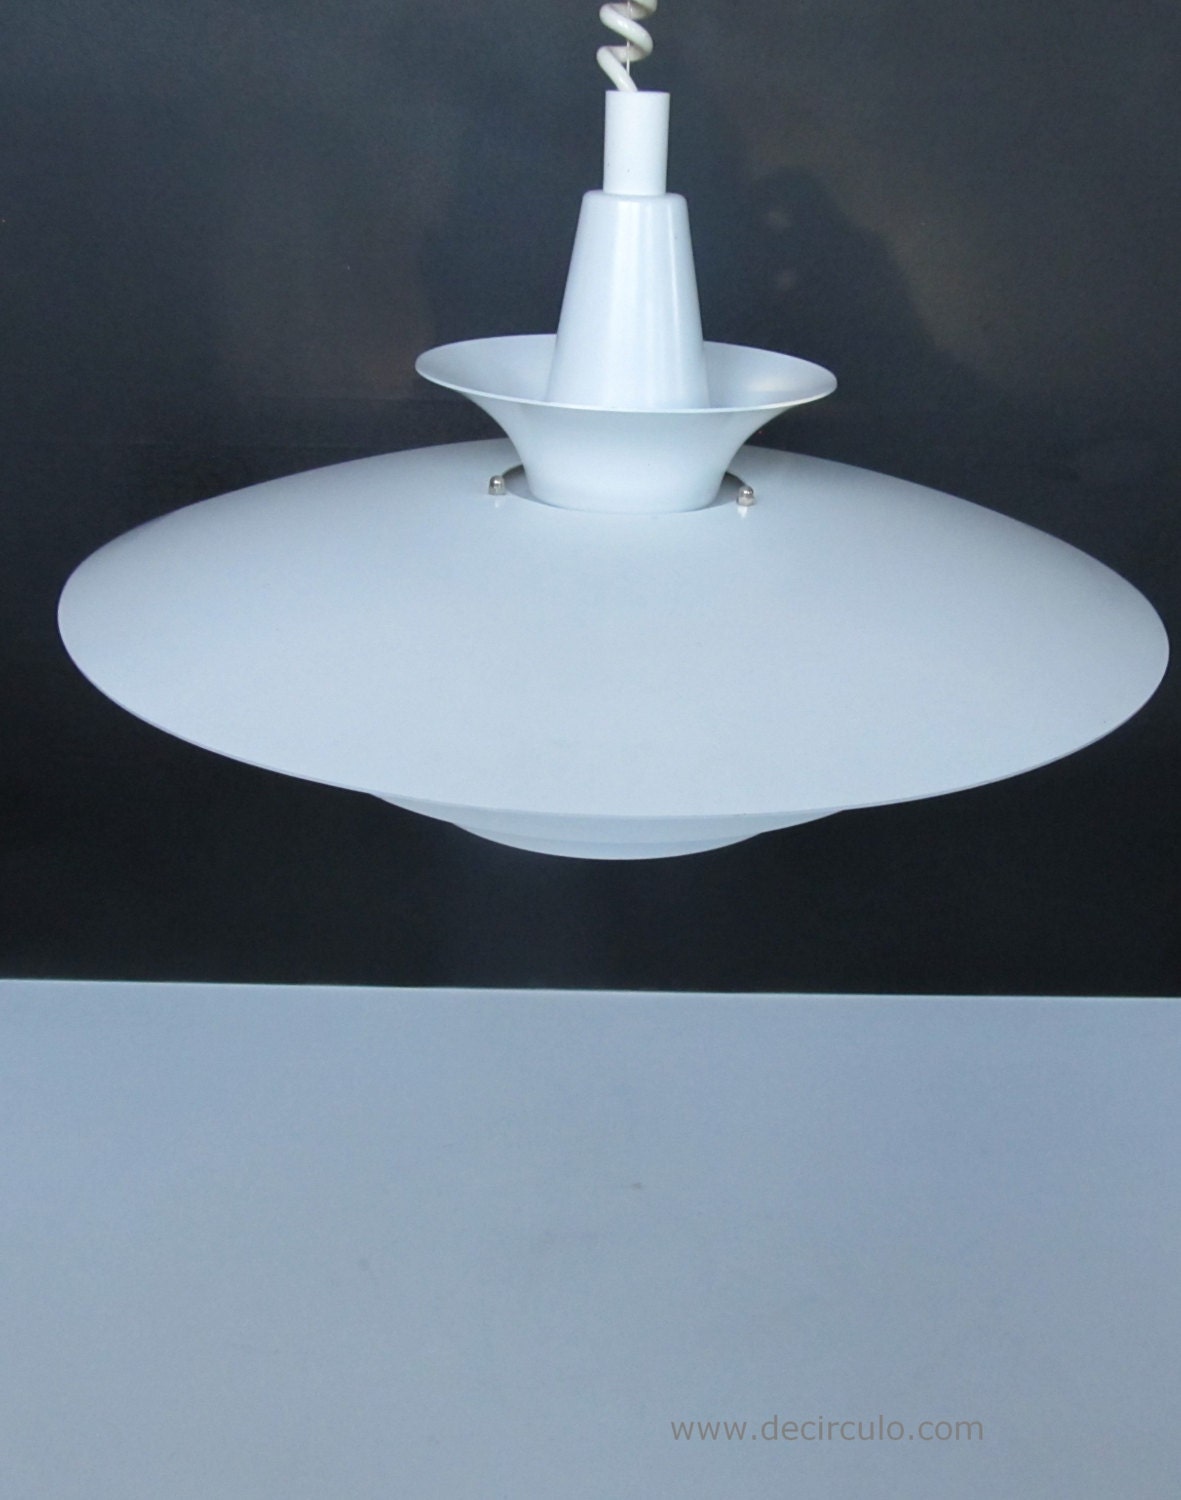 Lámpara de diseño danesa Abo Randers, gran luz de diseño escandinavo en blanco